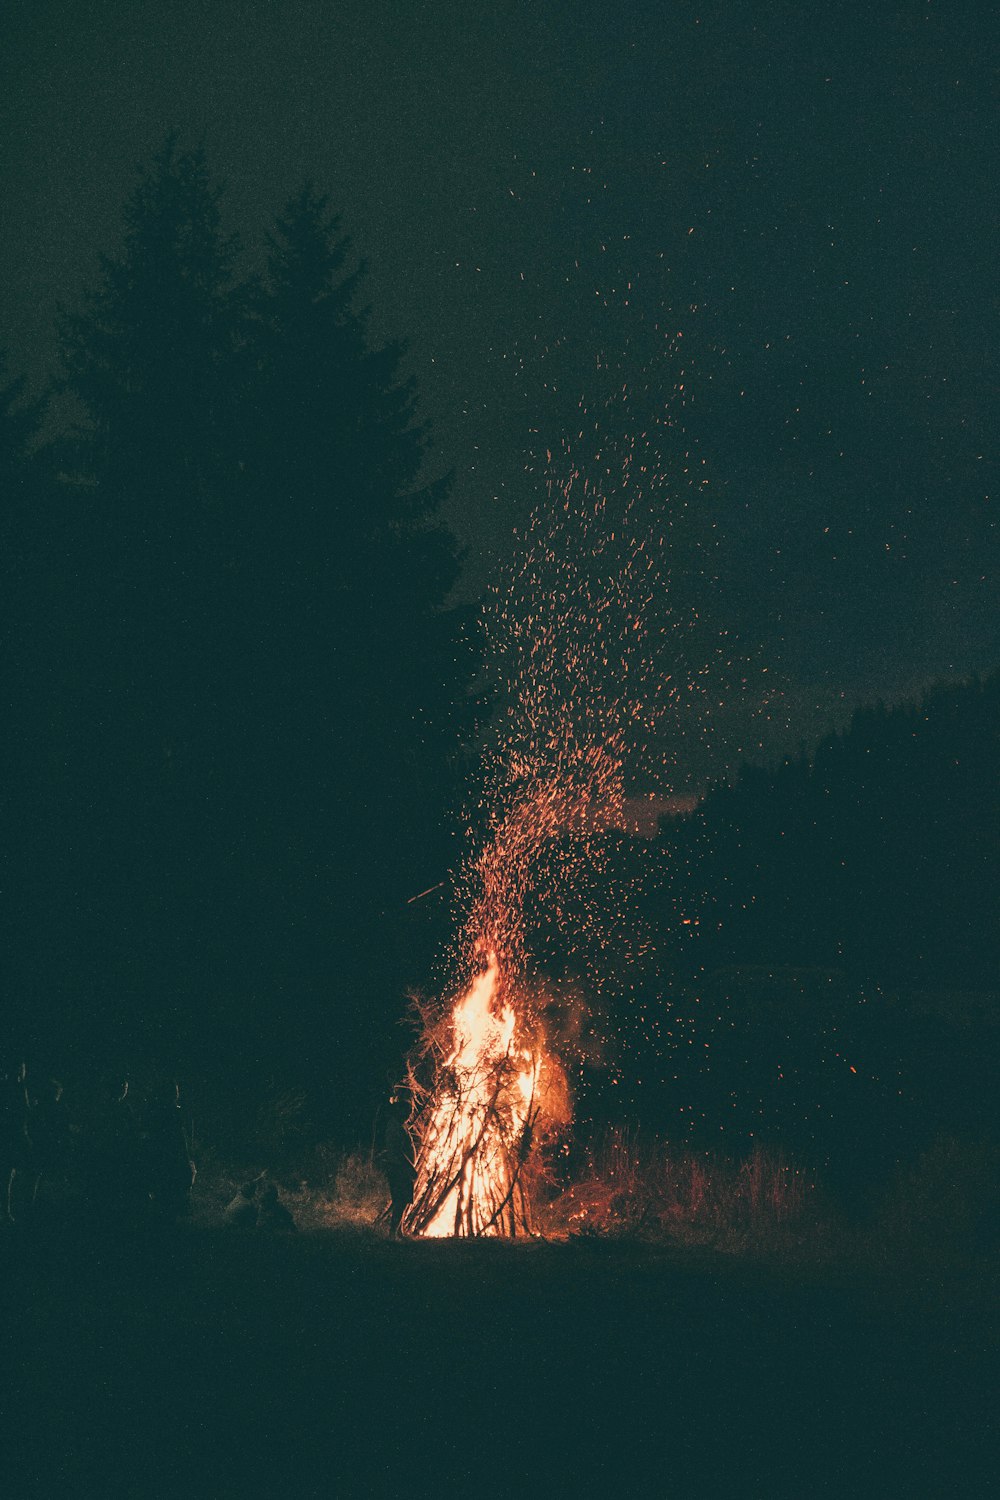 burning wood at night